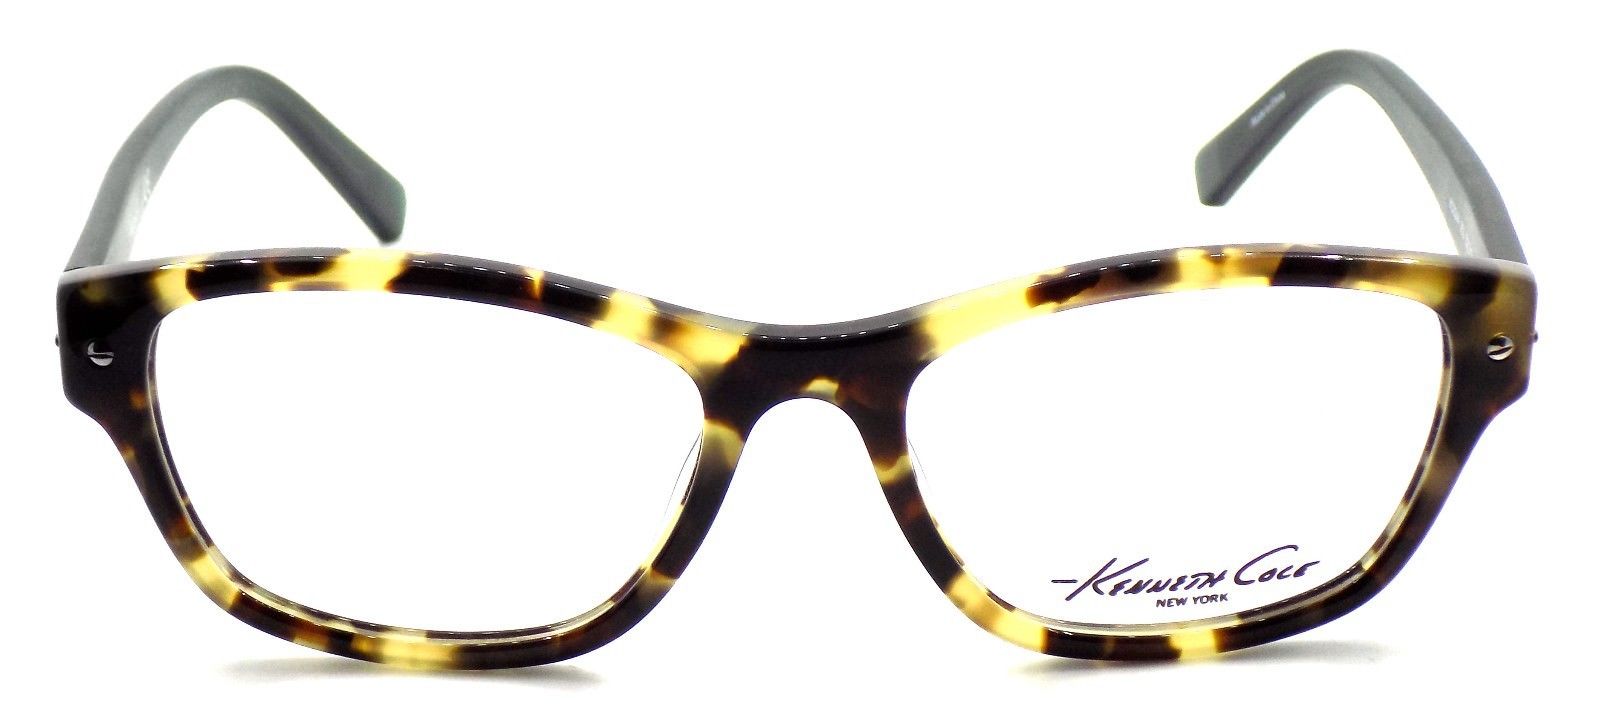 2-Kenneth Cole NY KC0244 053 Women's Eyeglasses 52-17-135 Blonde Havana + CASE-664689815555-IKSpecs